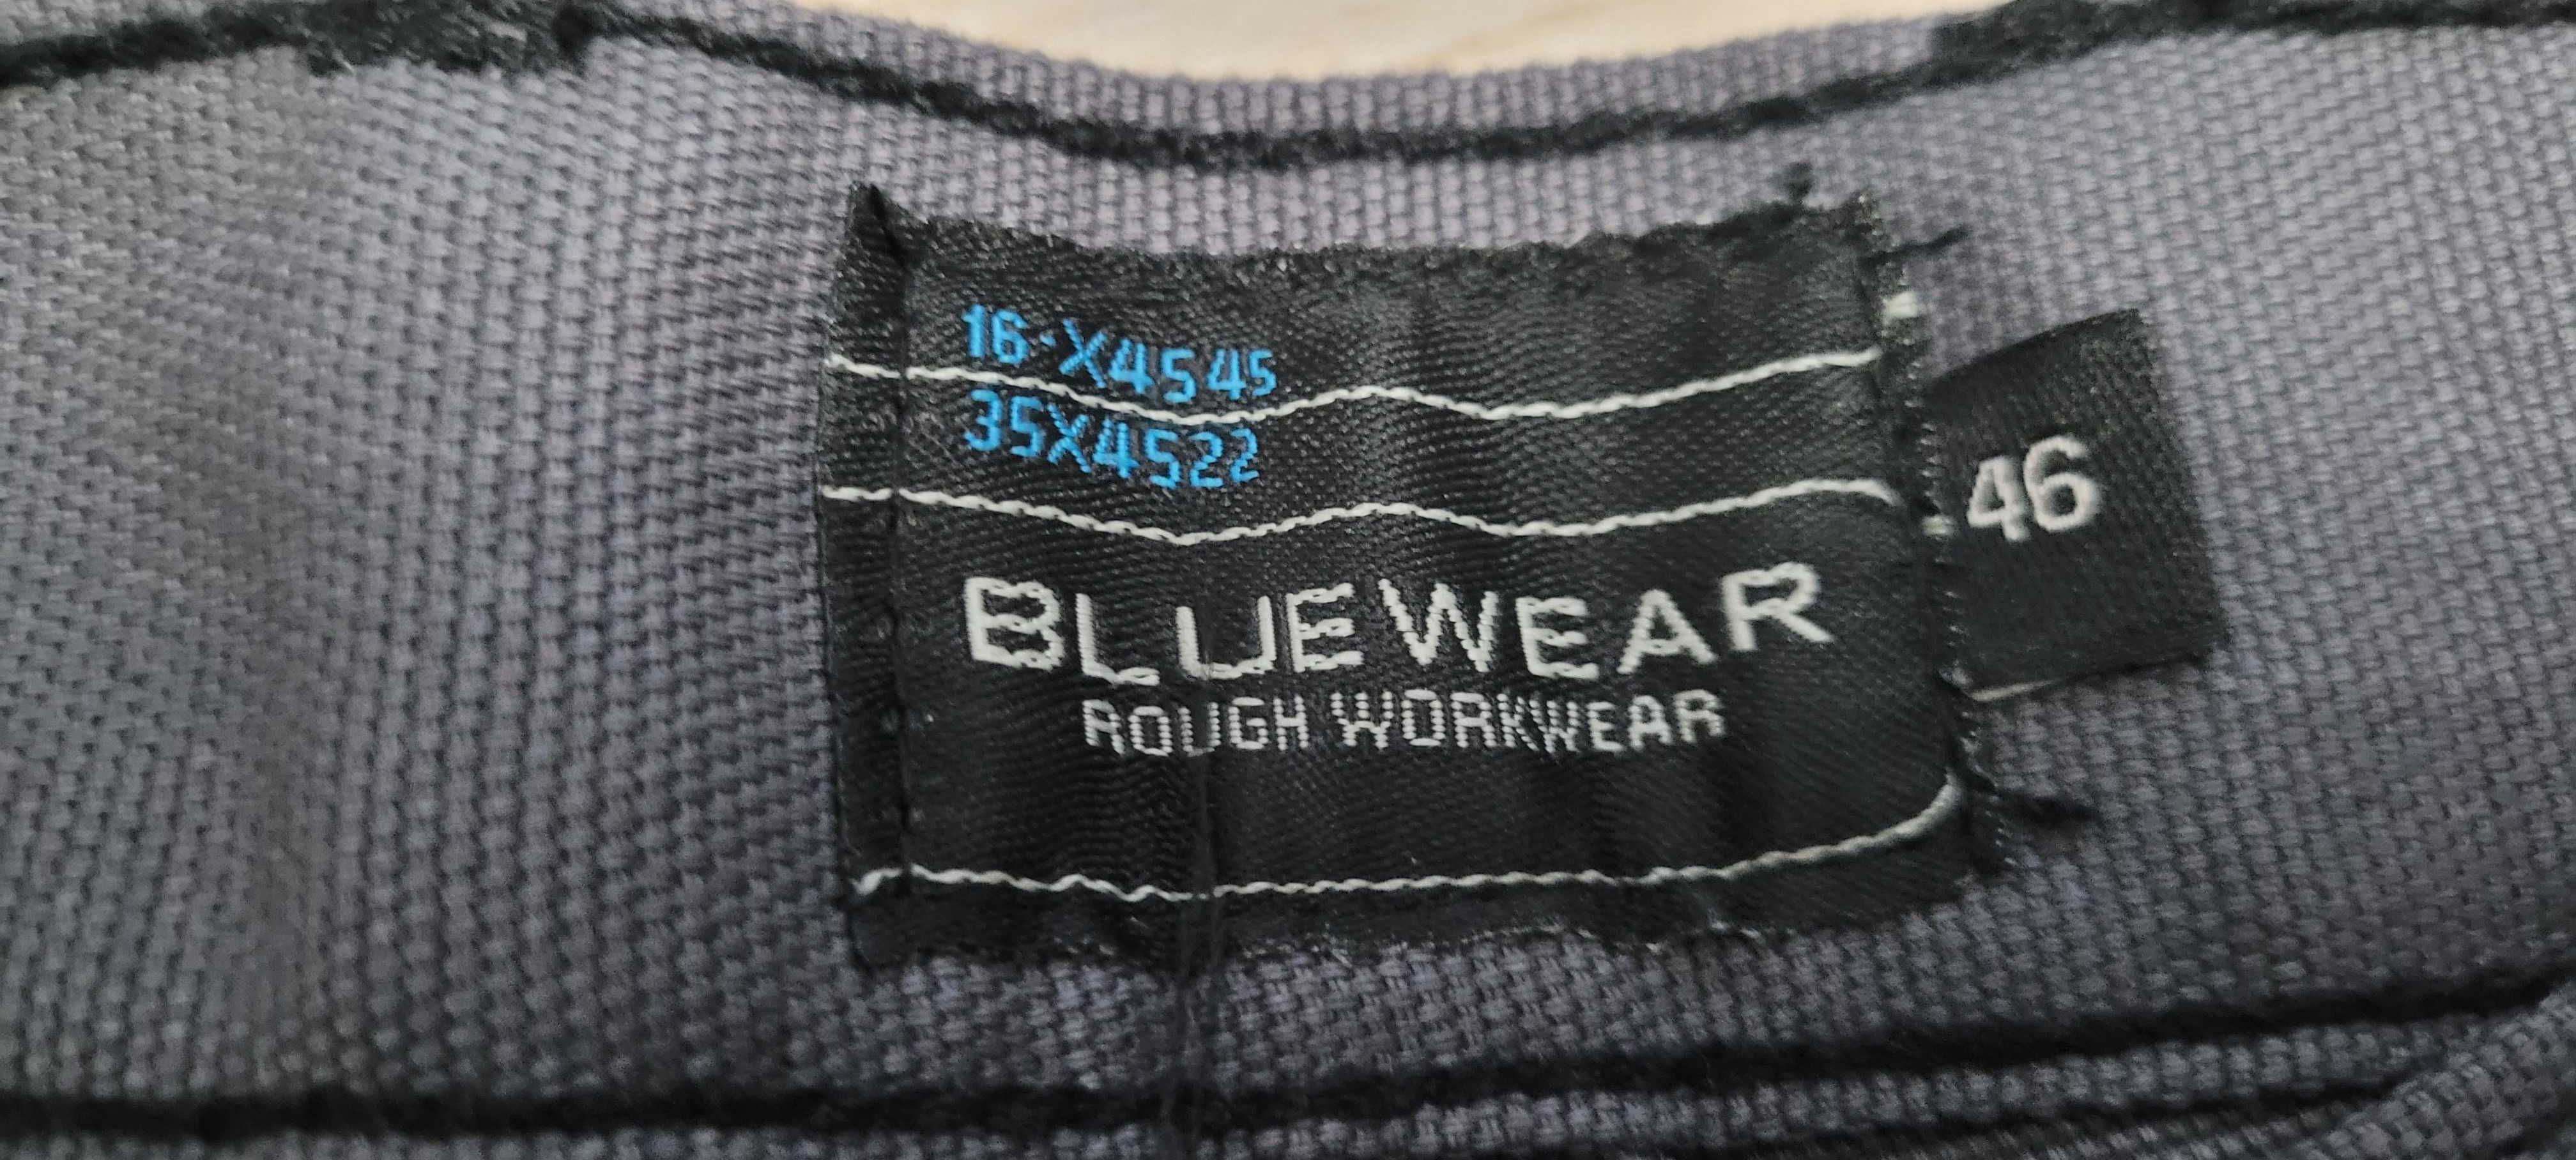 Spodnie robocze 46 Bluewear nowe